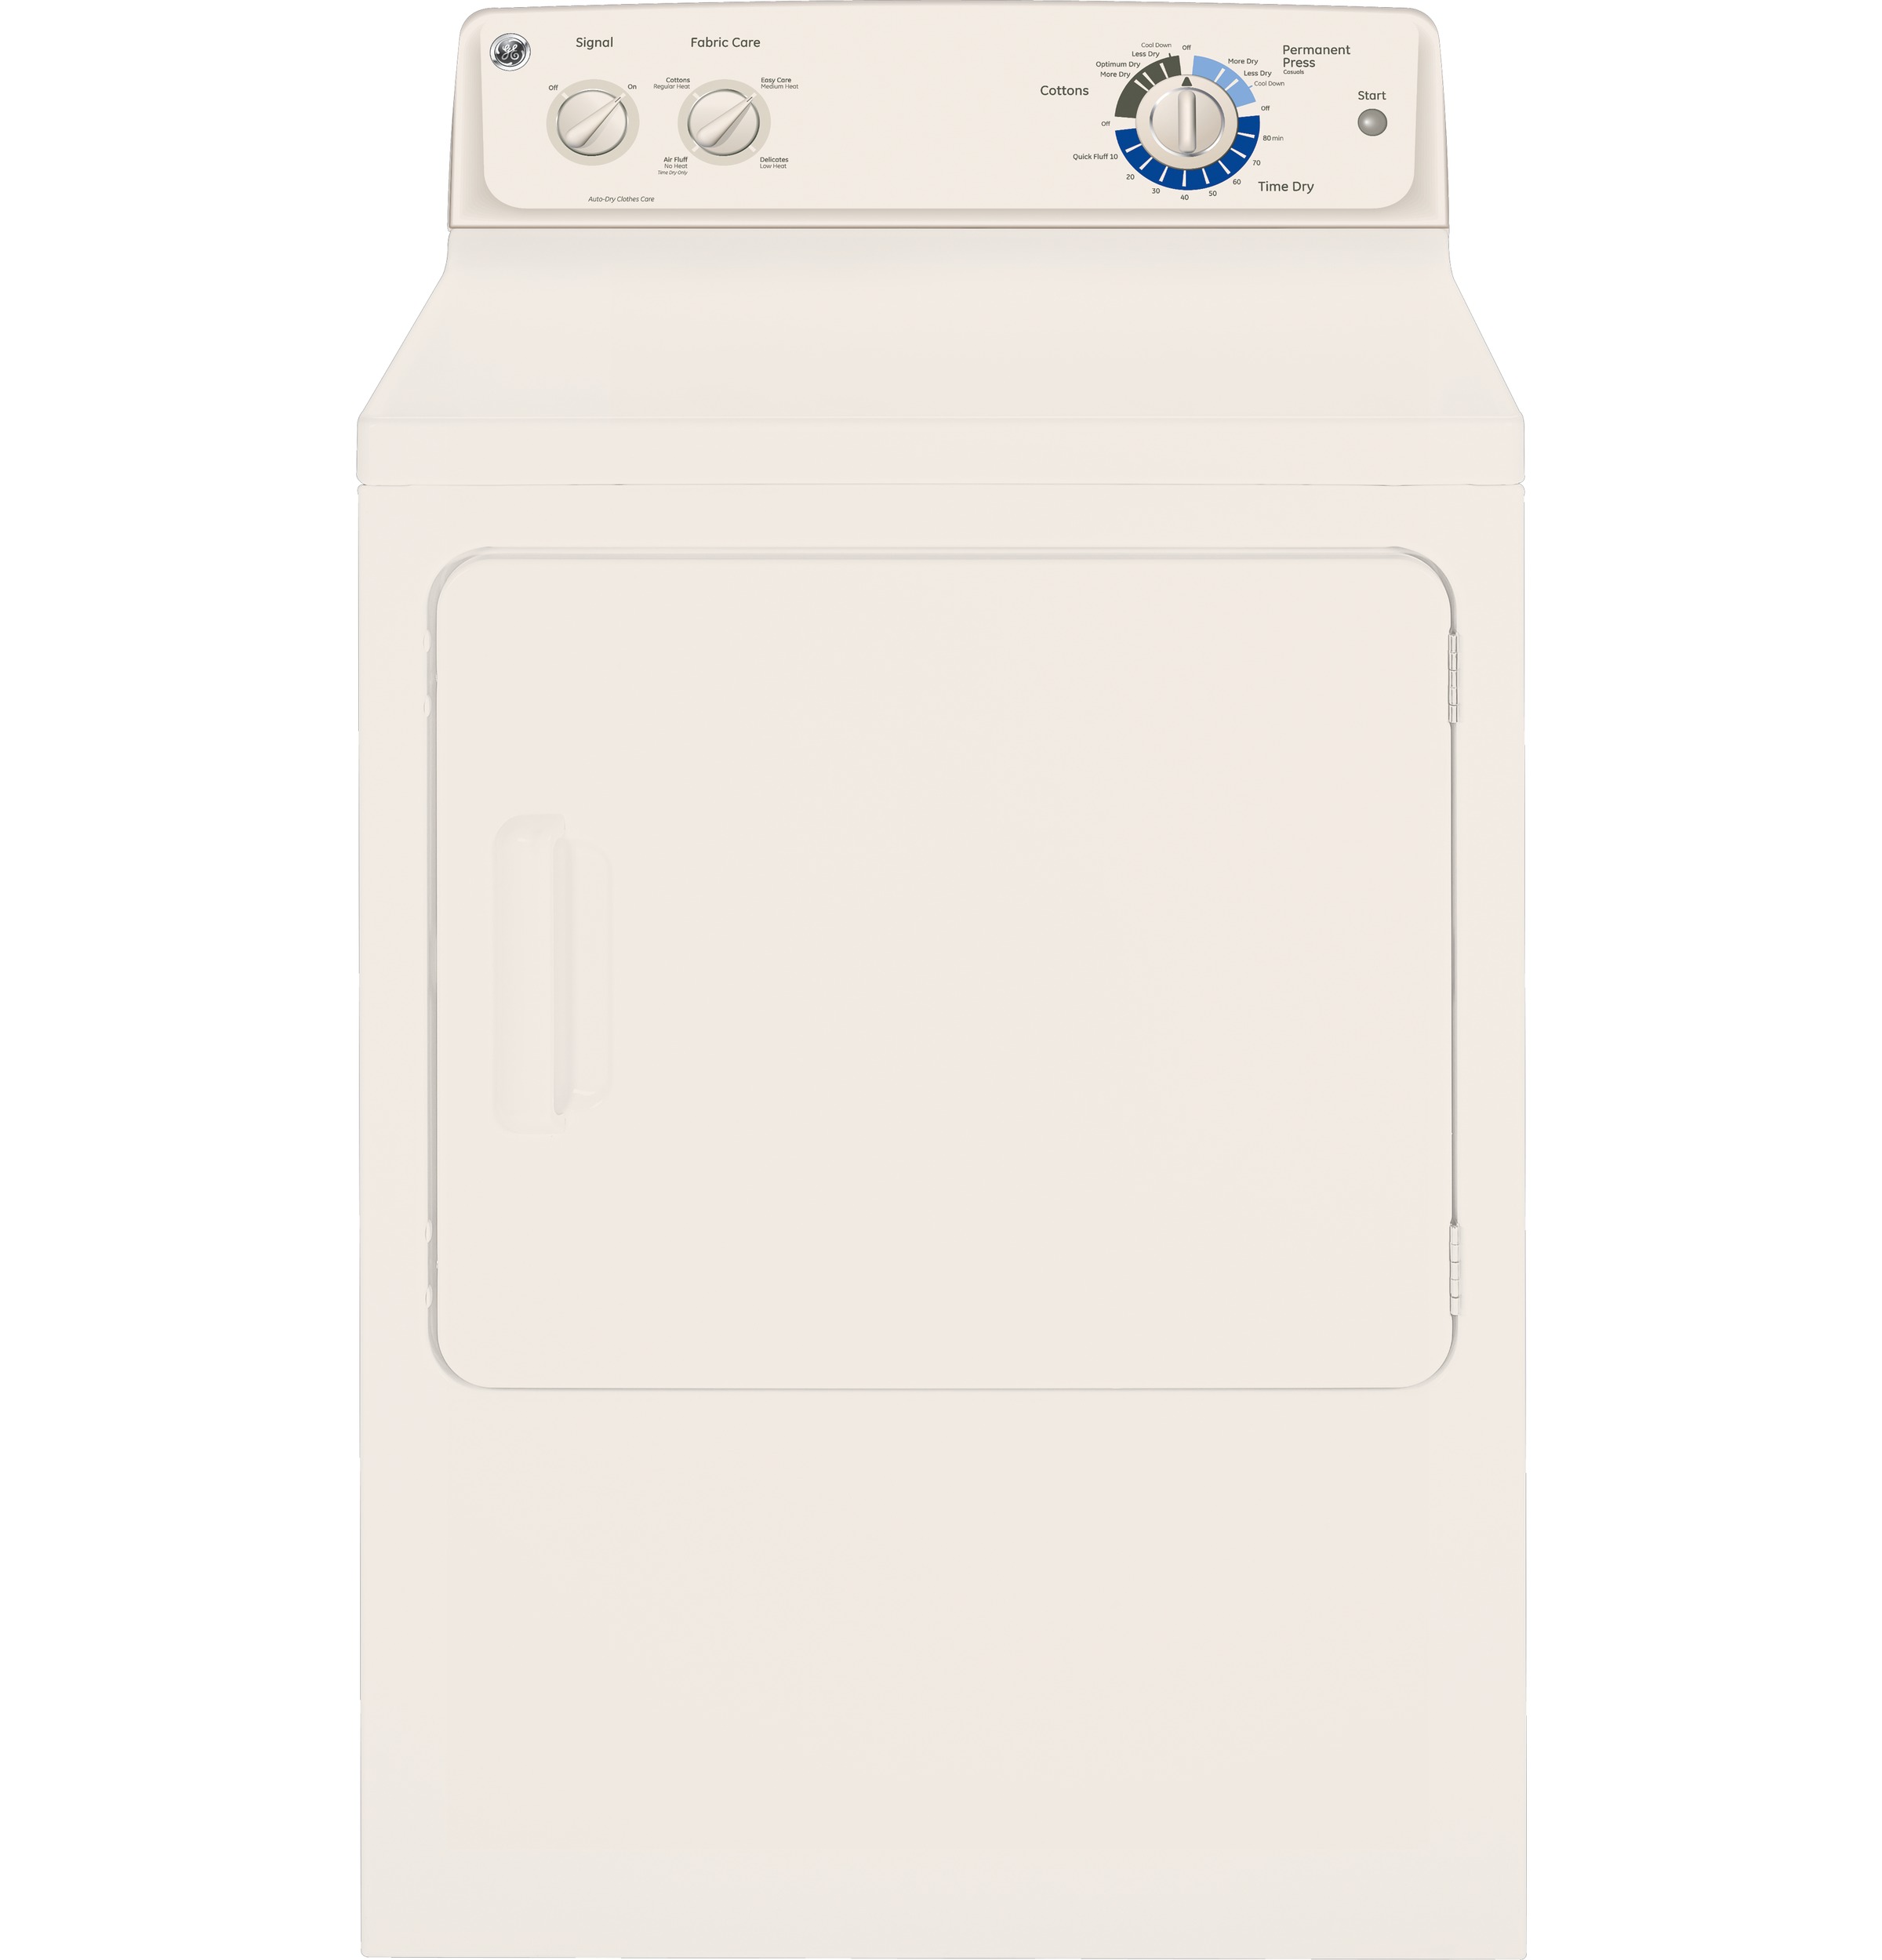 GE® 6.0 cu. ft. capacity Dura Drum electric dryer